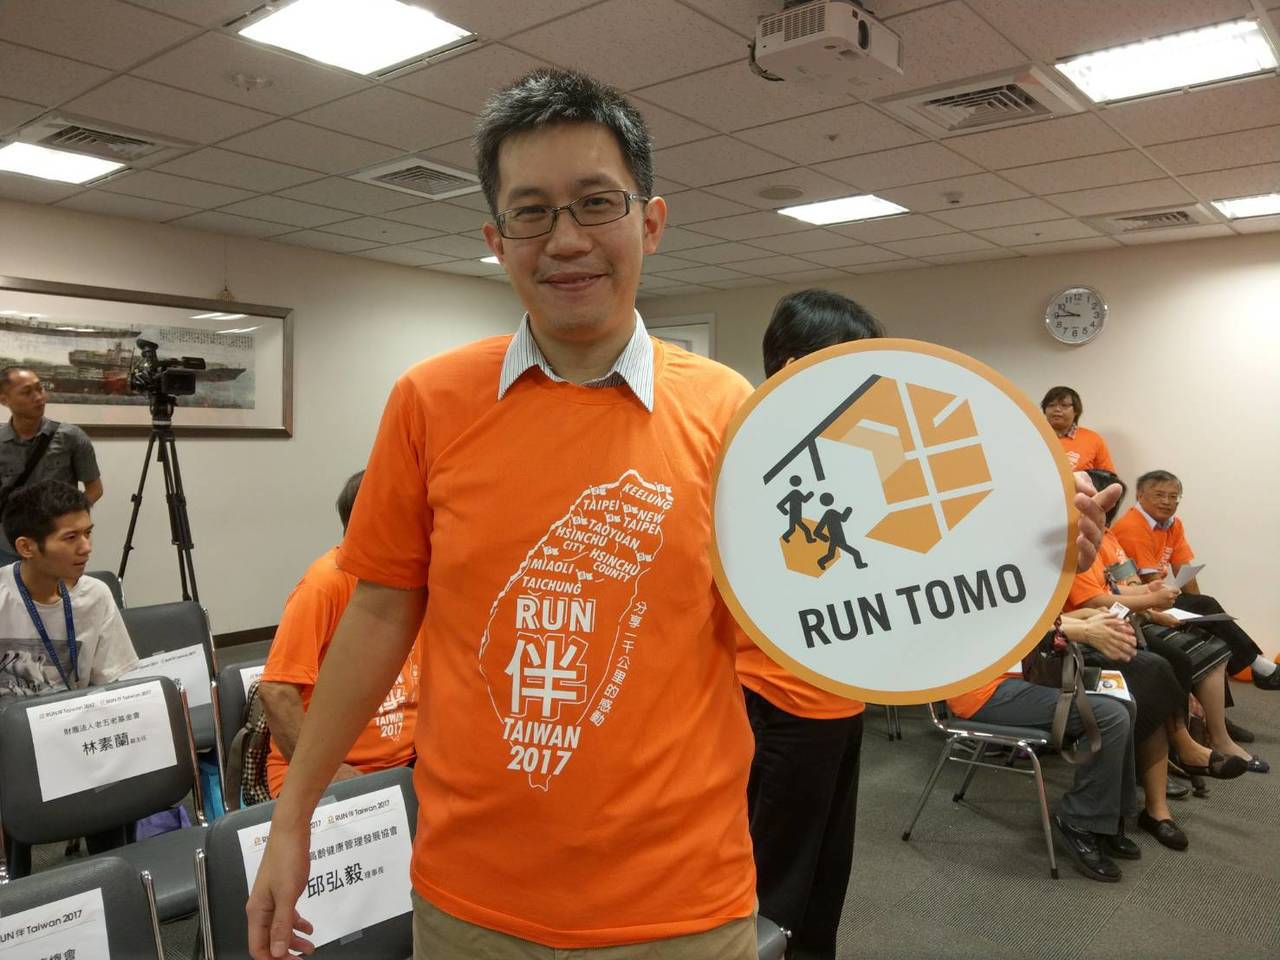 「失智症RUN伴2017在台灣」活動即將啟動，朱智邦醫師穿橘黃色背心表示支持，他表示，民眾如果在路上遇到這隻橘黃色健走隊伍，希望給予掌聲、鼓勵。朱智邦醫師/提供